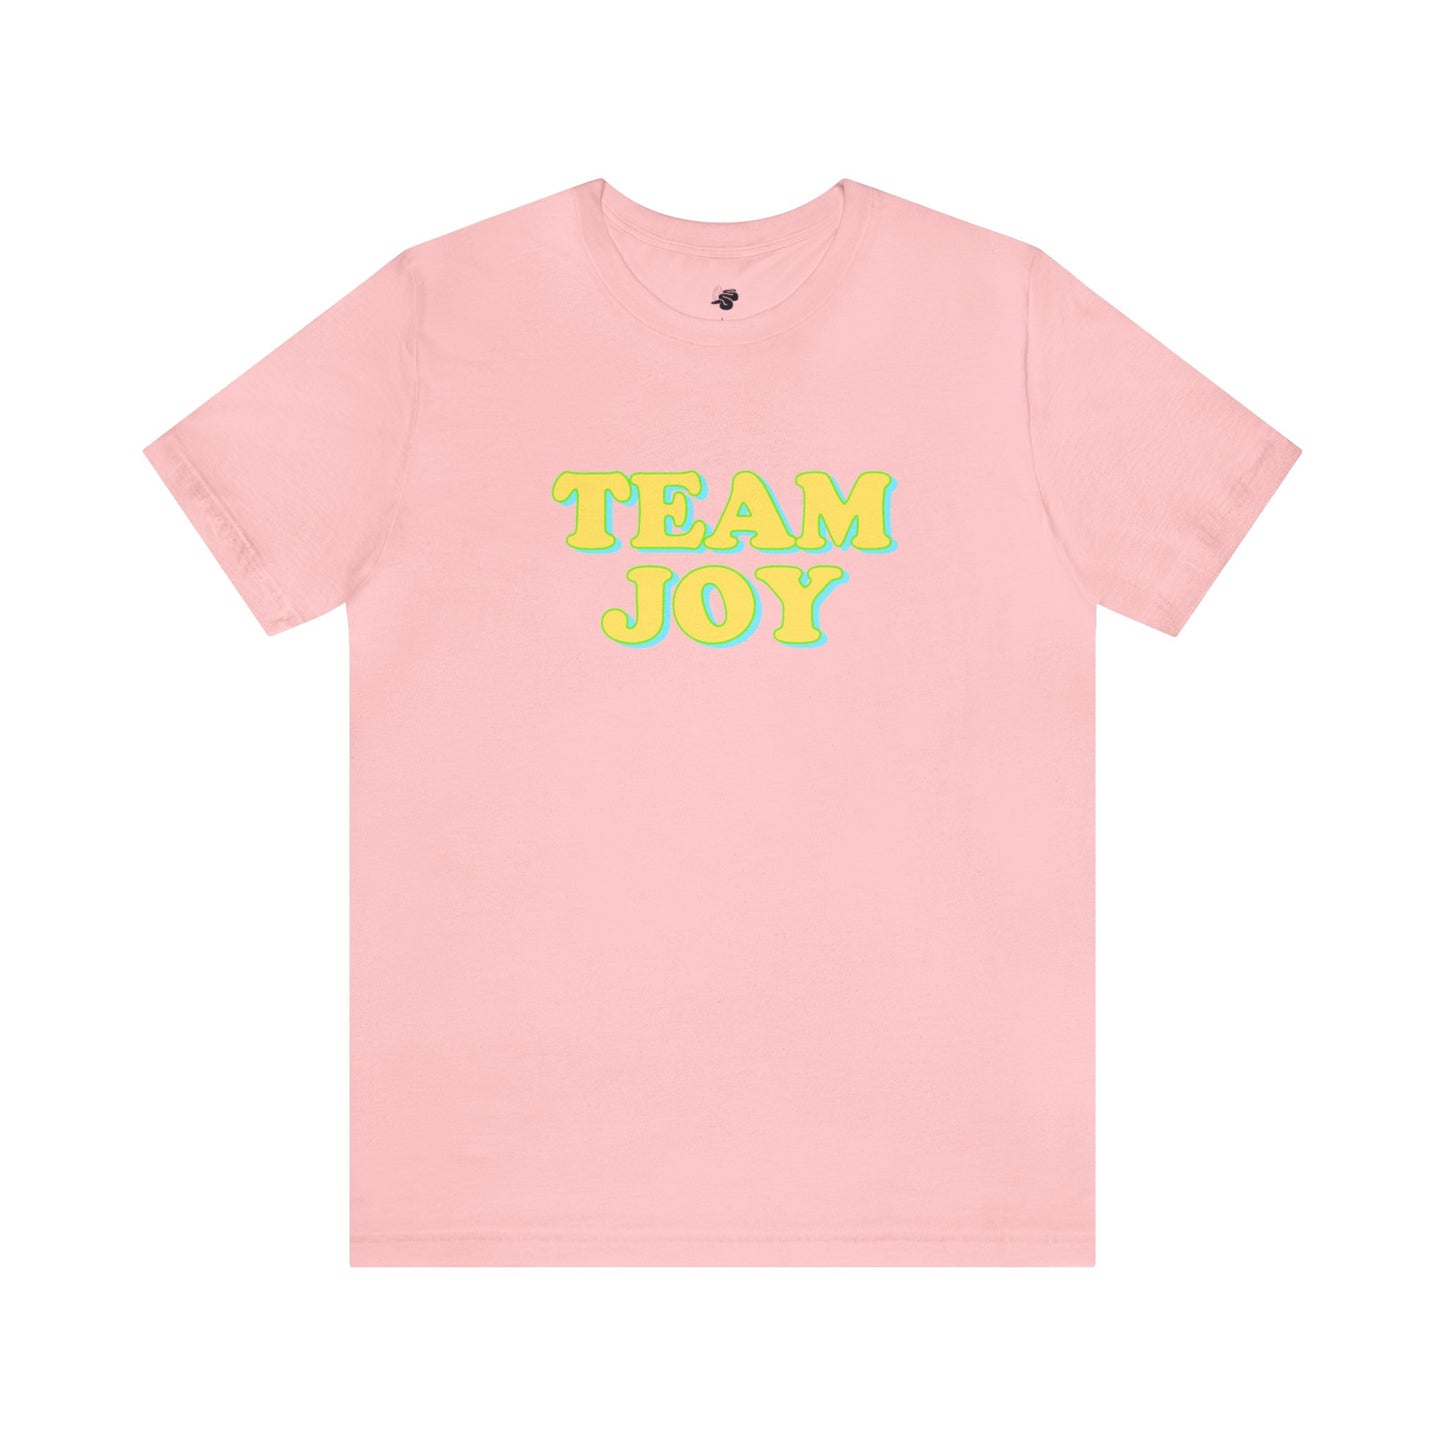 TEAM JOY T-shirt